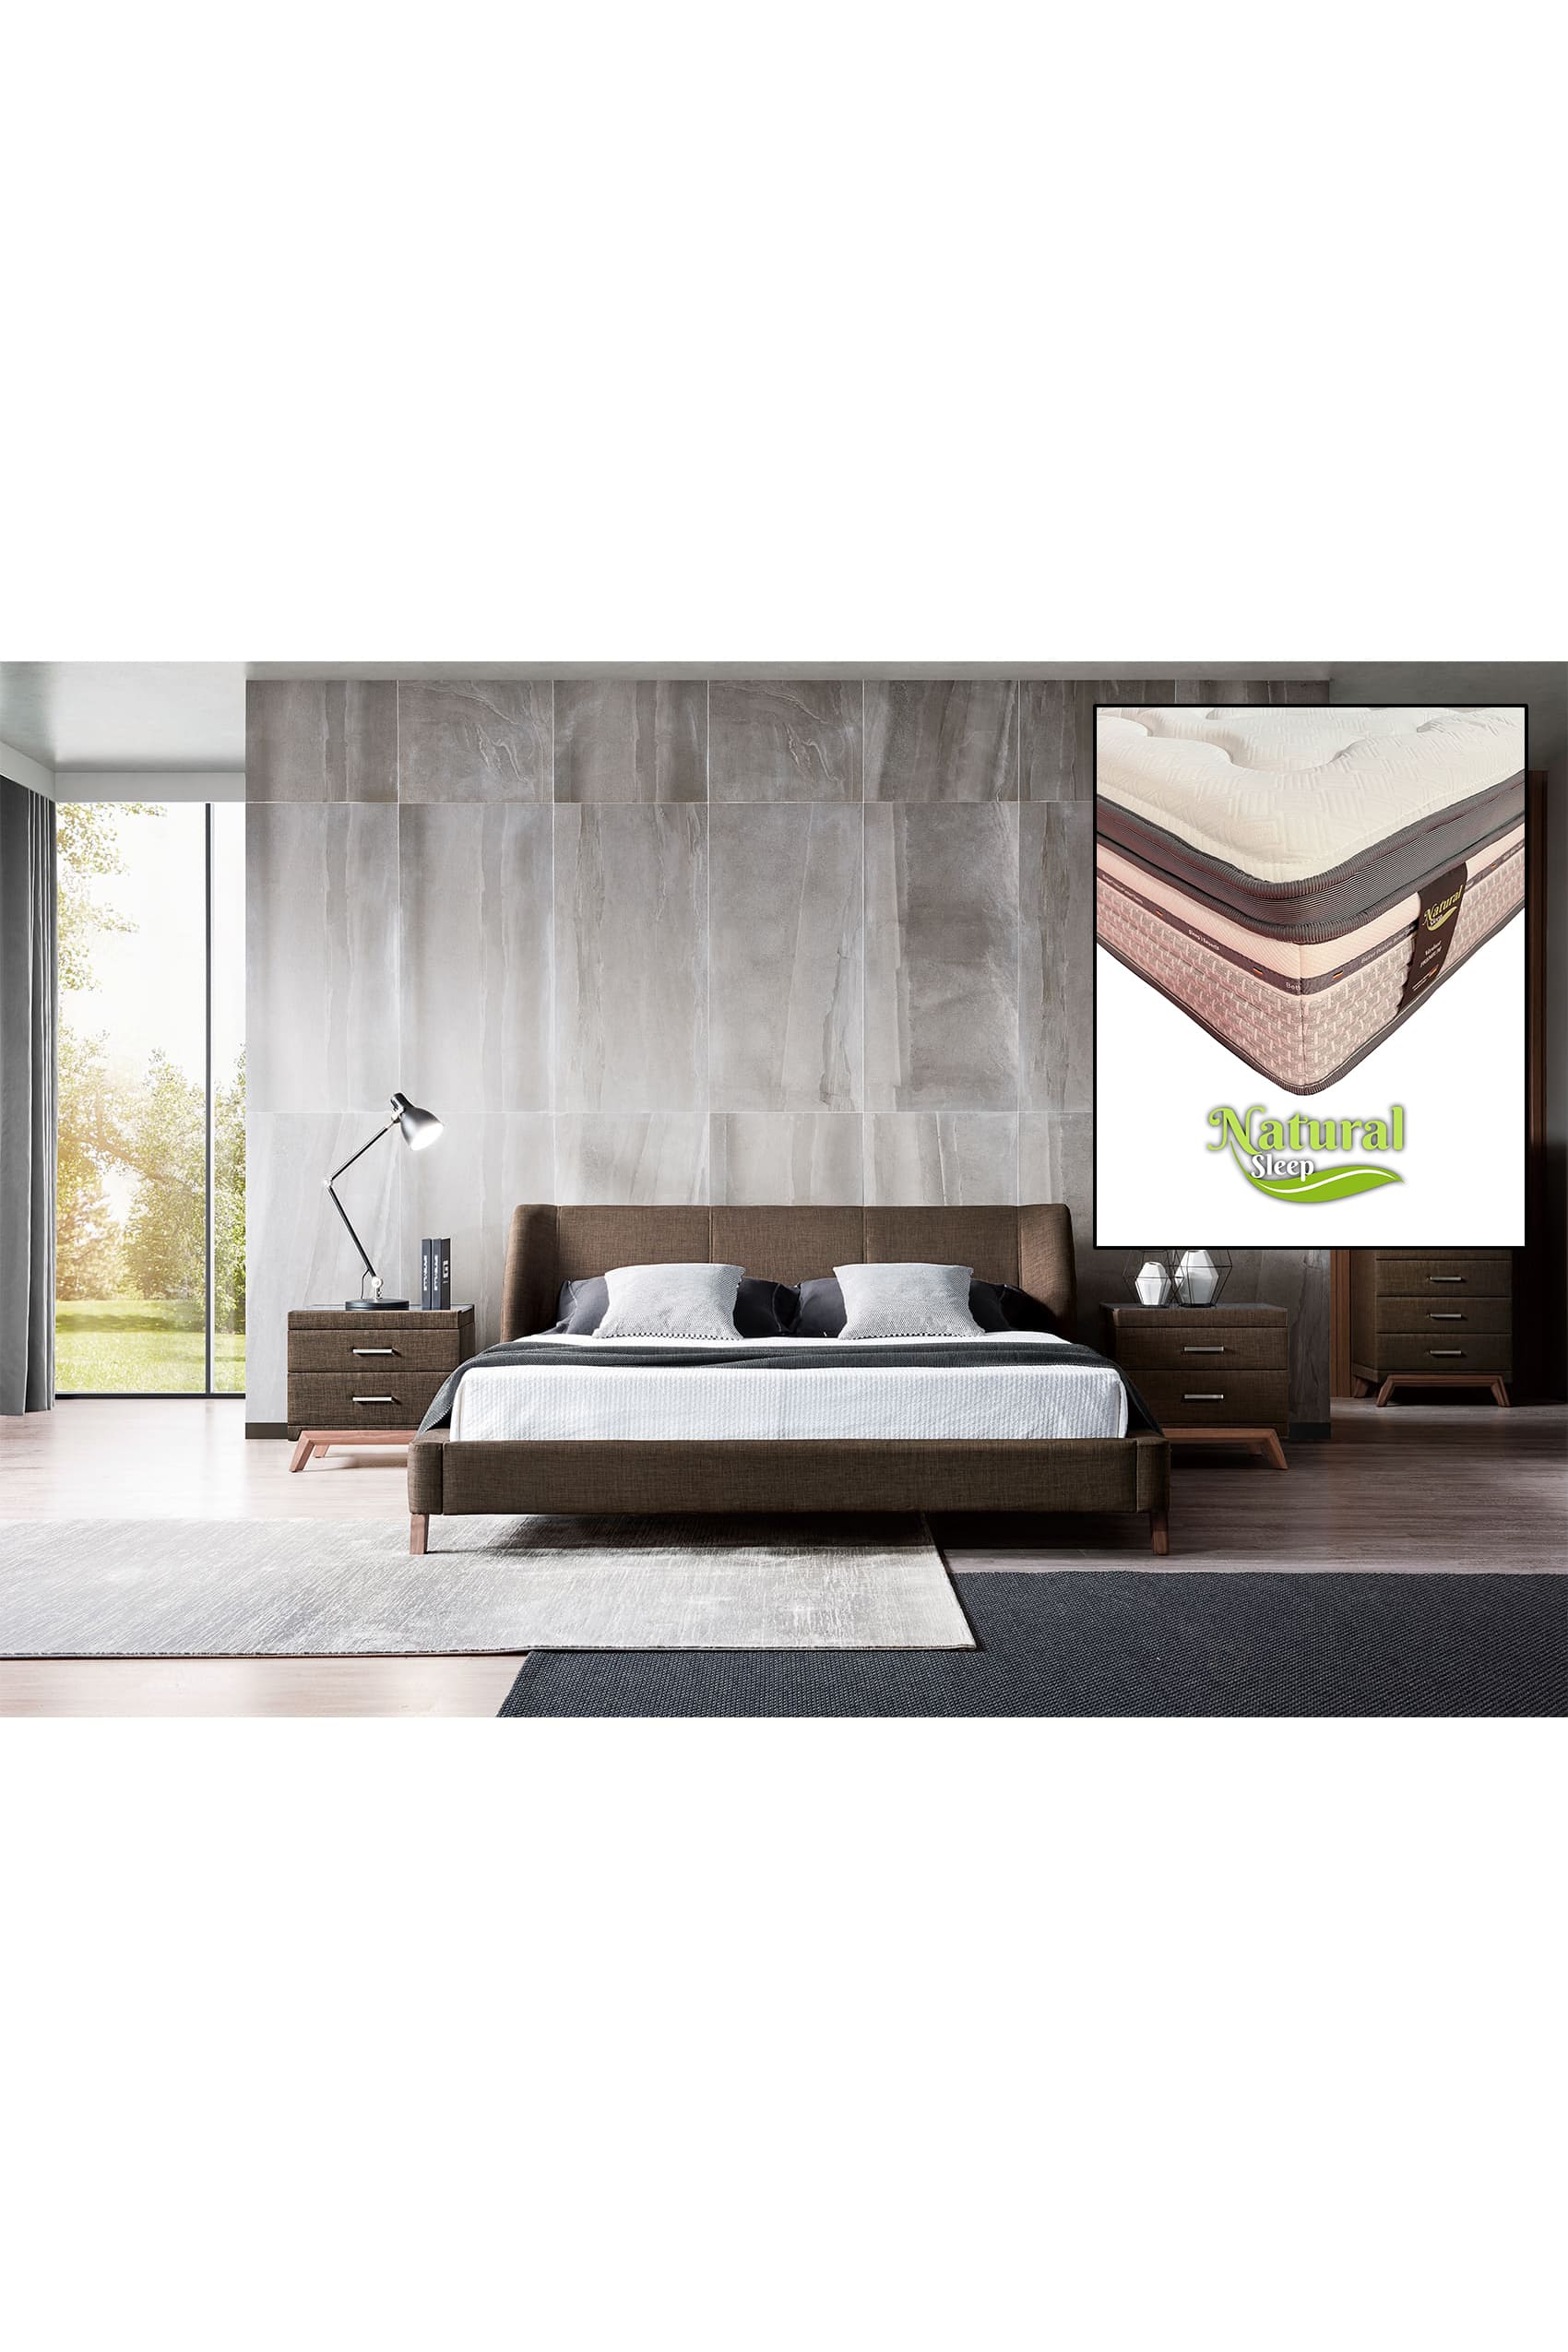 Ander Designer Bed Frame + Natural Sleep Verdant